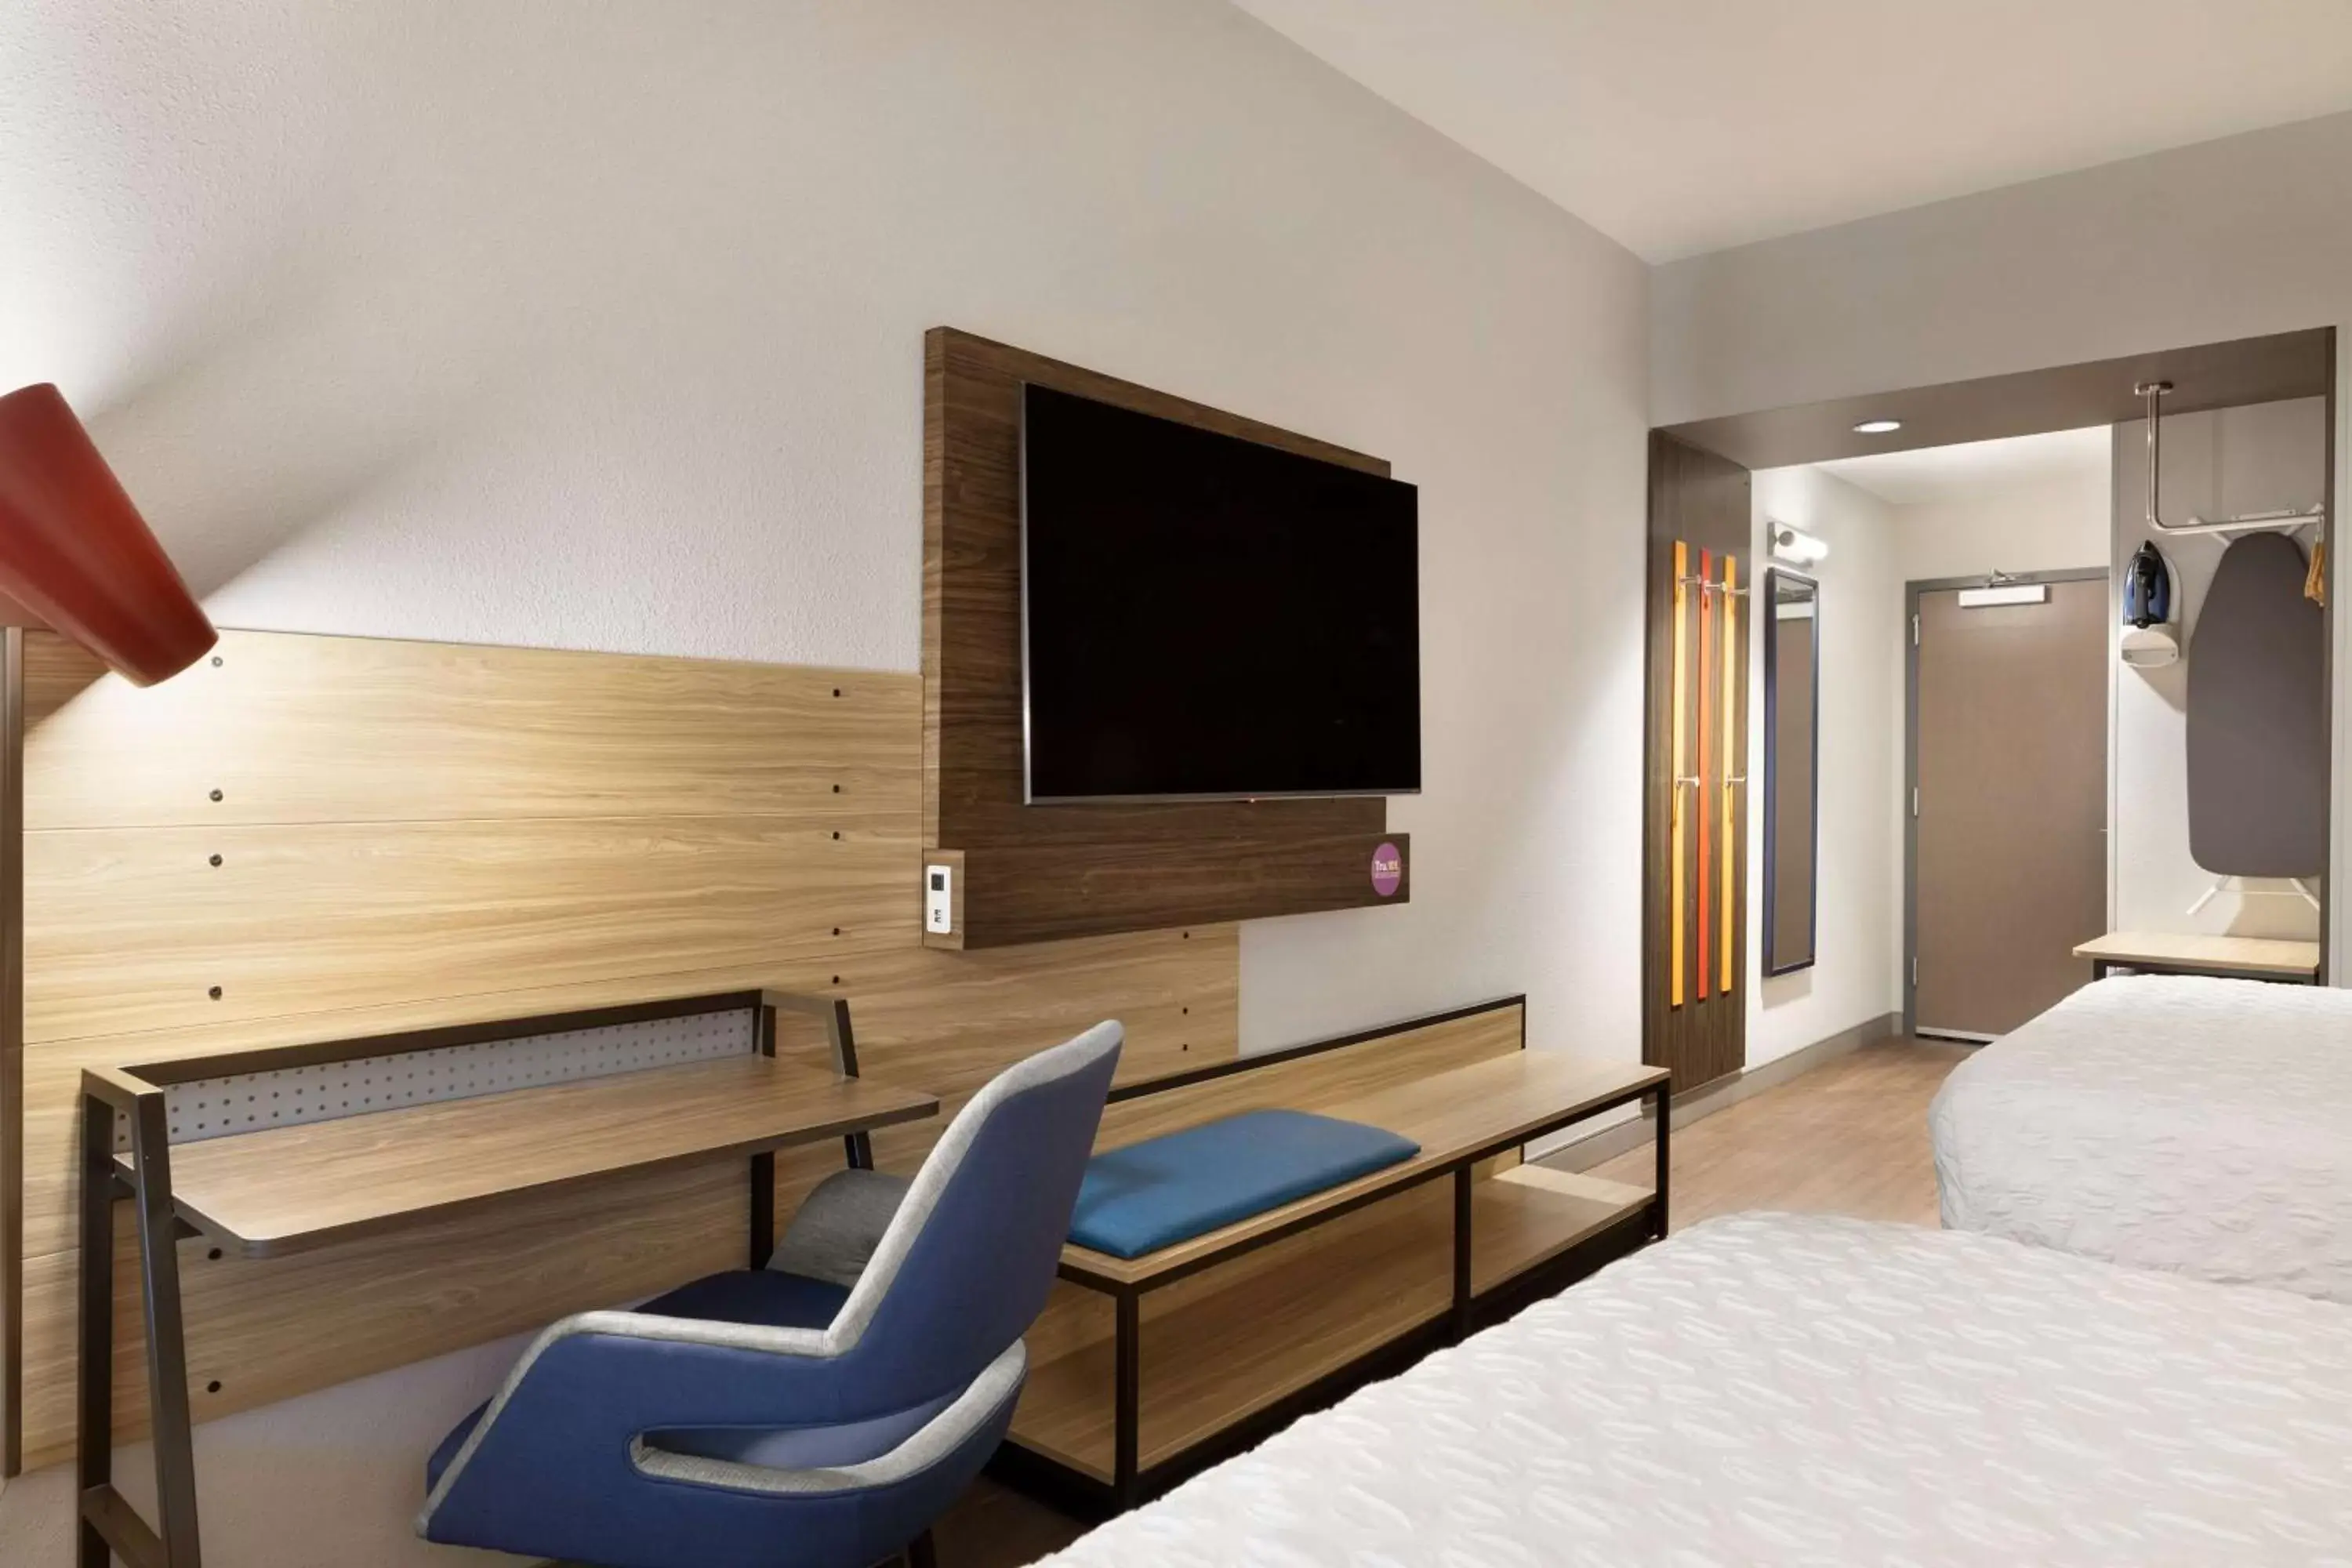 Bedroom, TV/Entertainment Center in Tru By Hilton Ogden, Ut